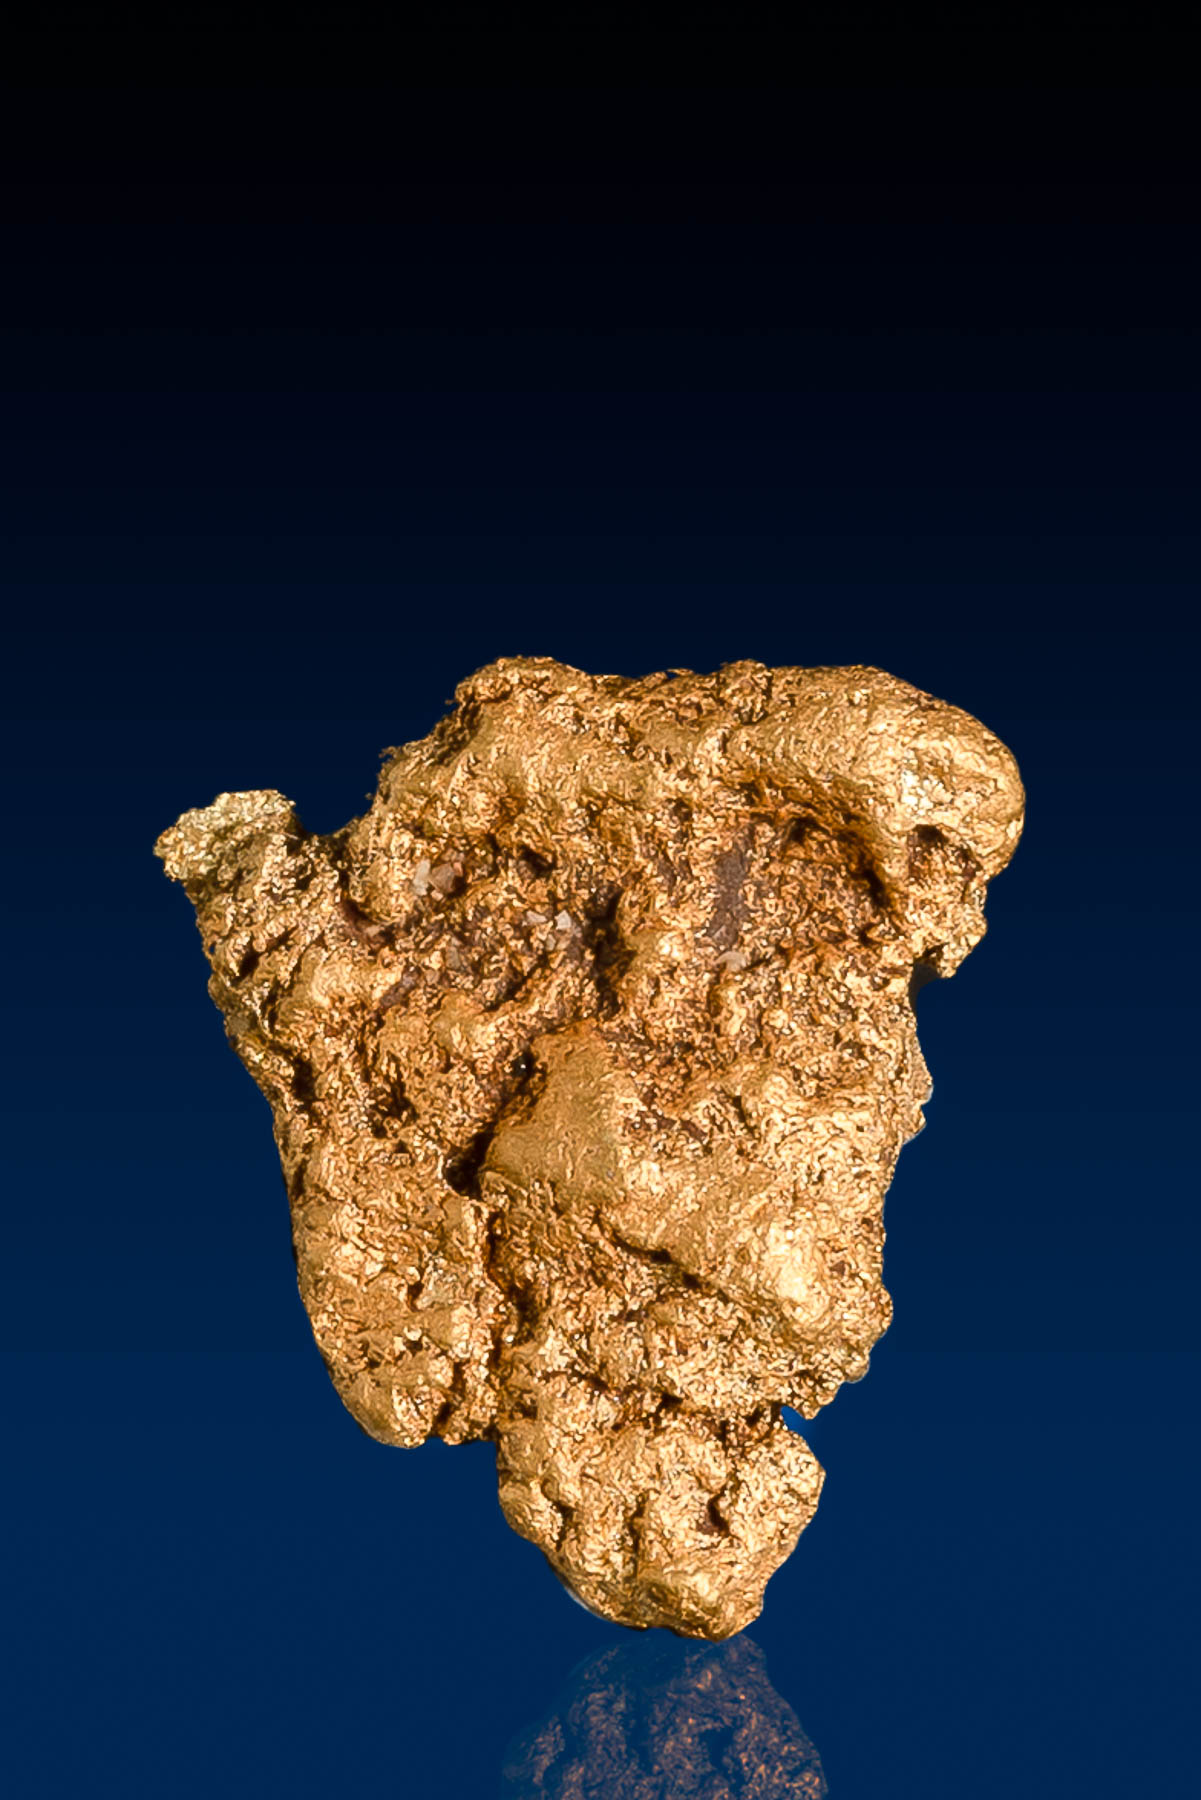 Wedge Shaped Arizona Natural Gold Nugget - 1.67 grams